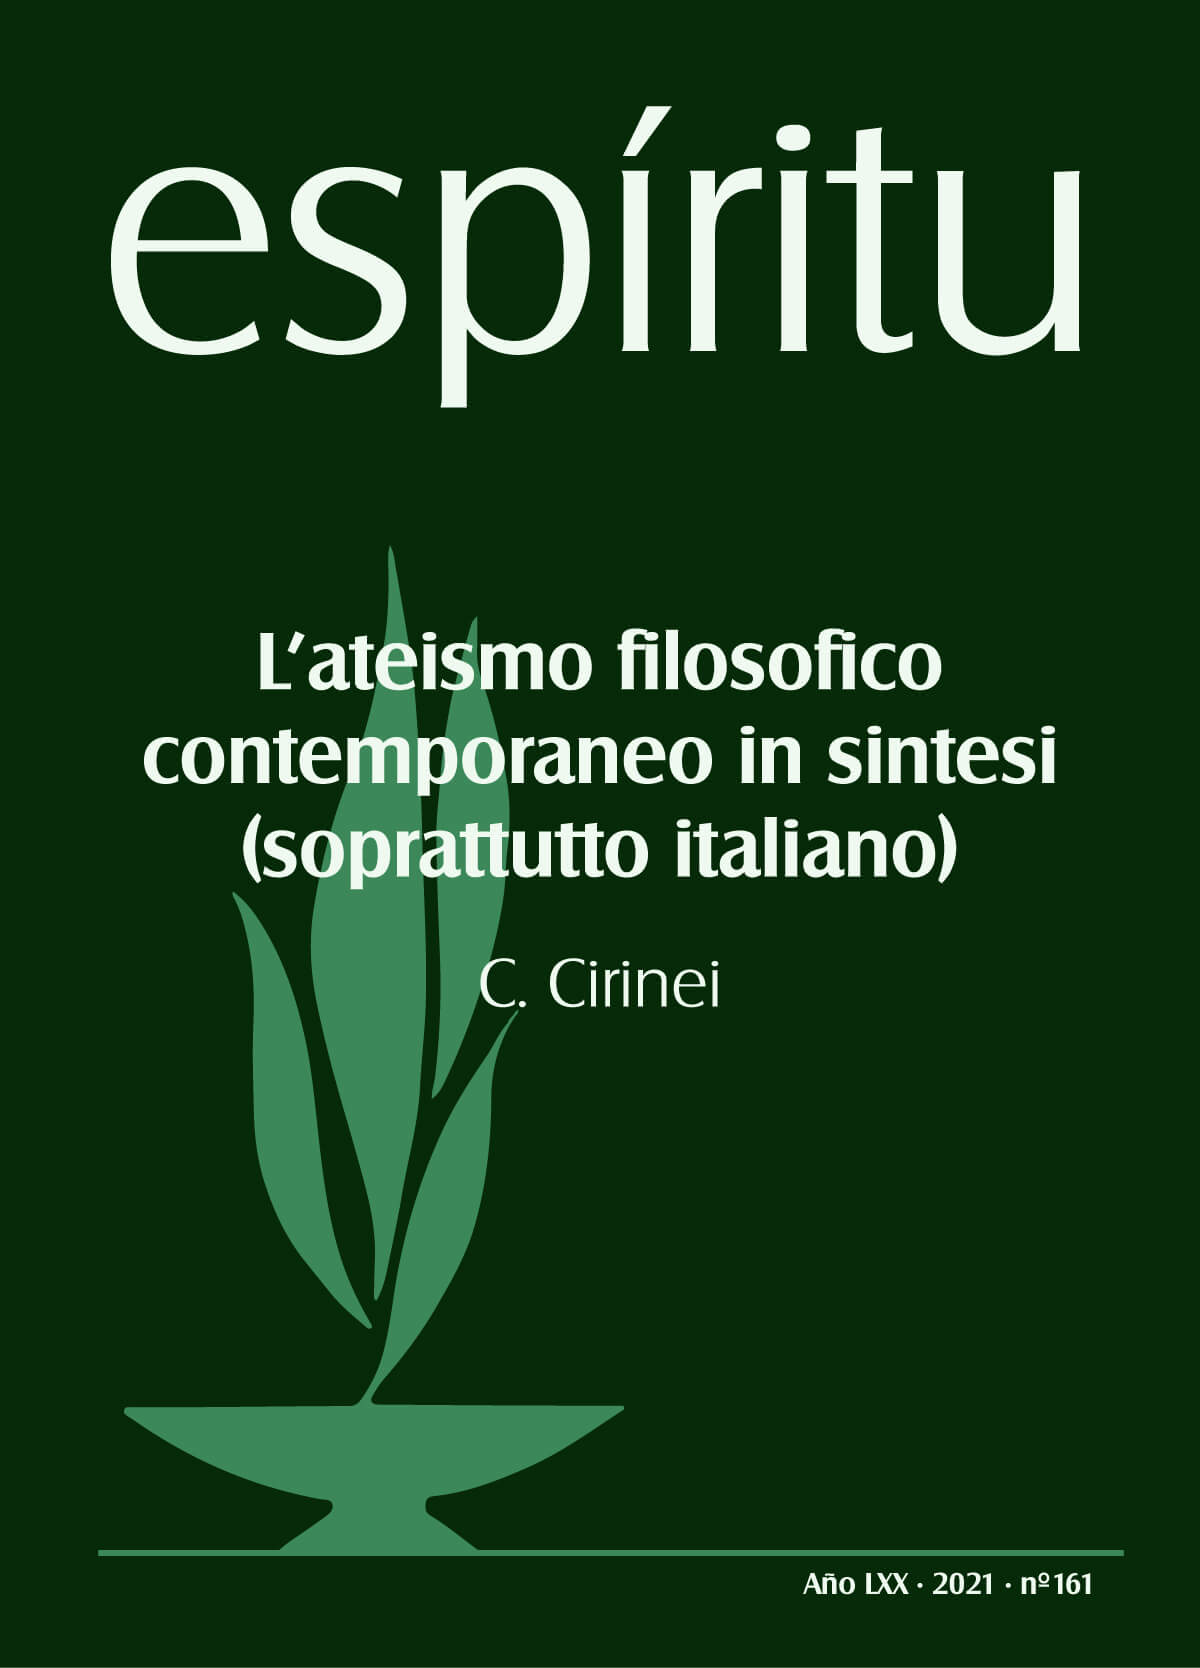 C. CIRINEI, L’ateismo filosofico contemporaneo in sintesi (soprattutto italiano)